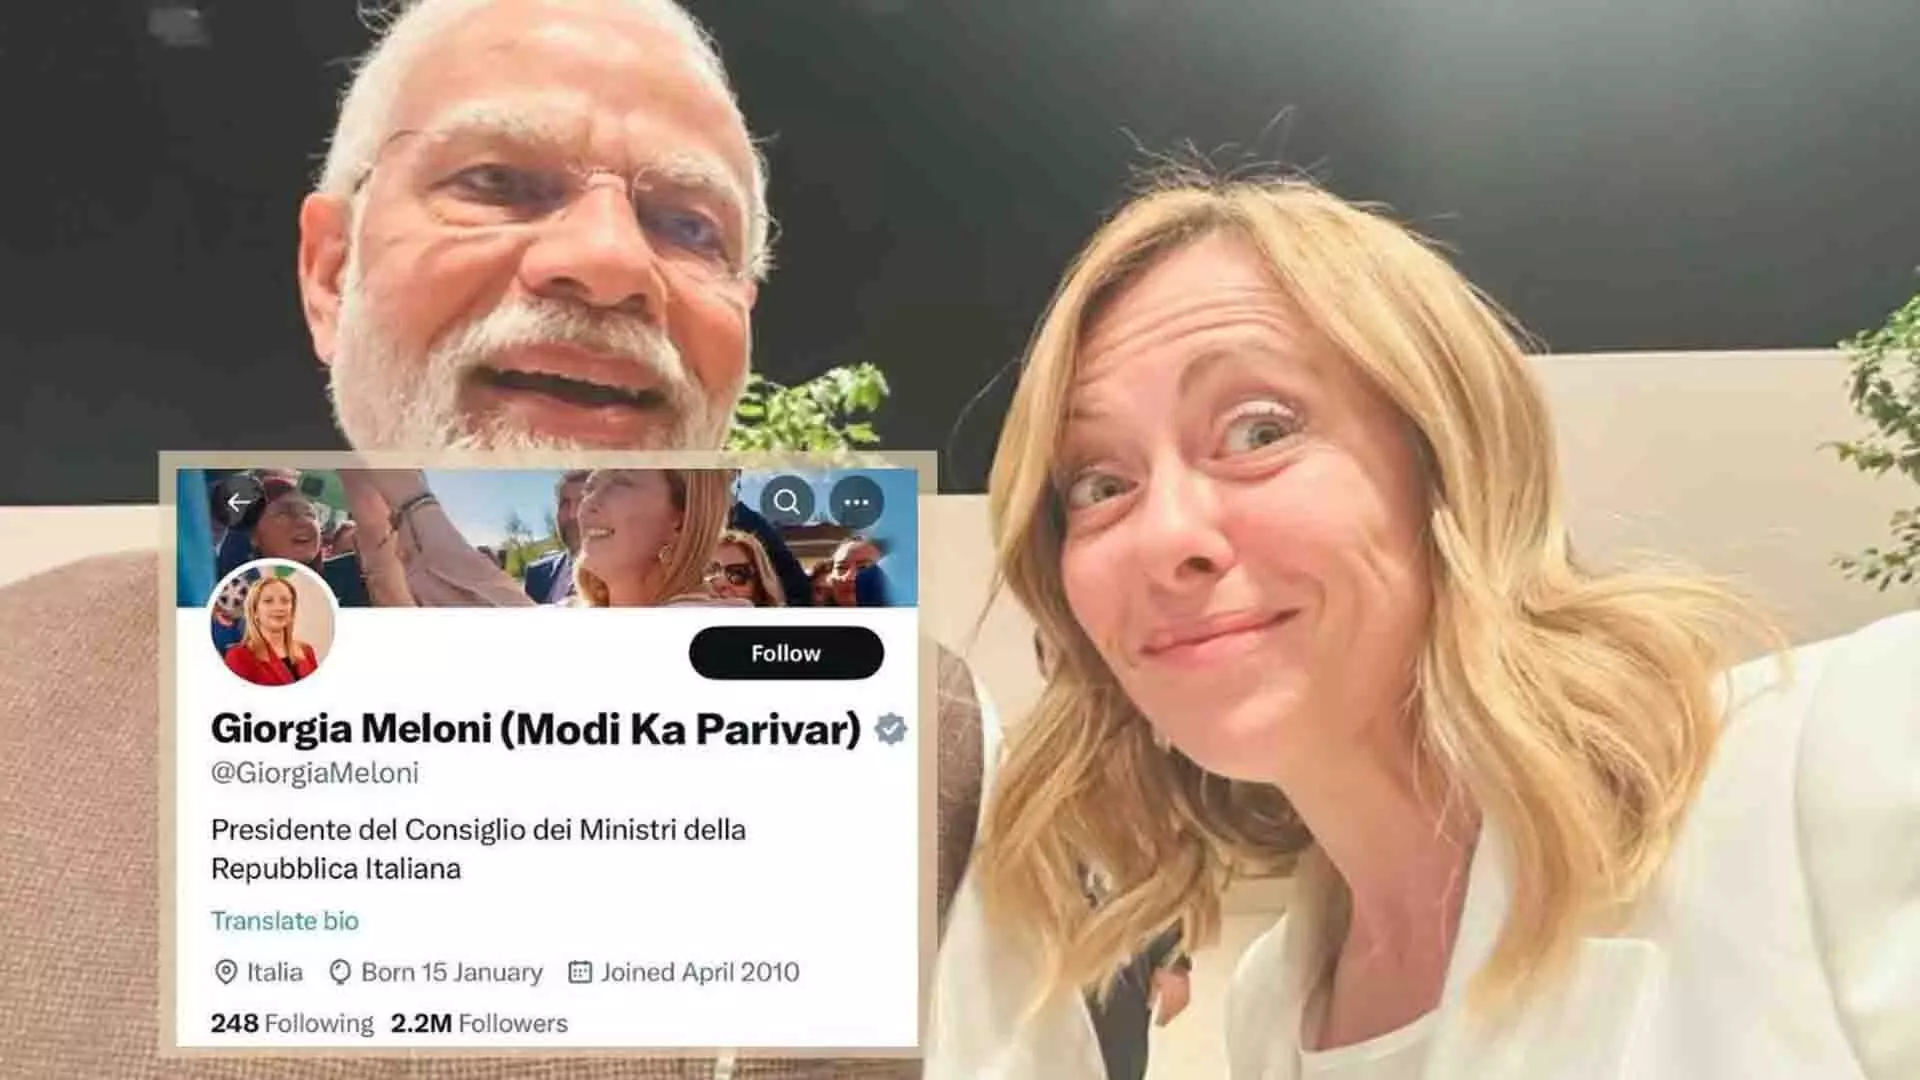 क्या इटली की प्रधानमंत्री ने ट्विटर प्रोफ़ाइल में मोदी का नाम जोड़ा